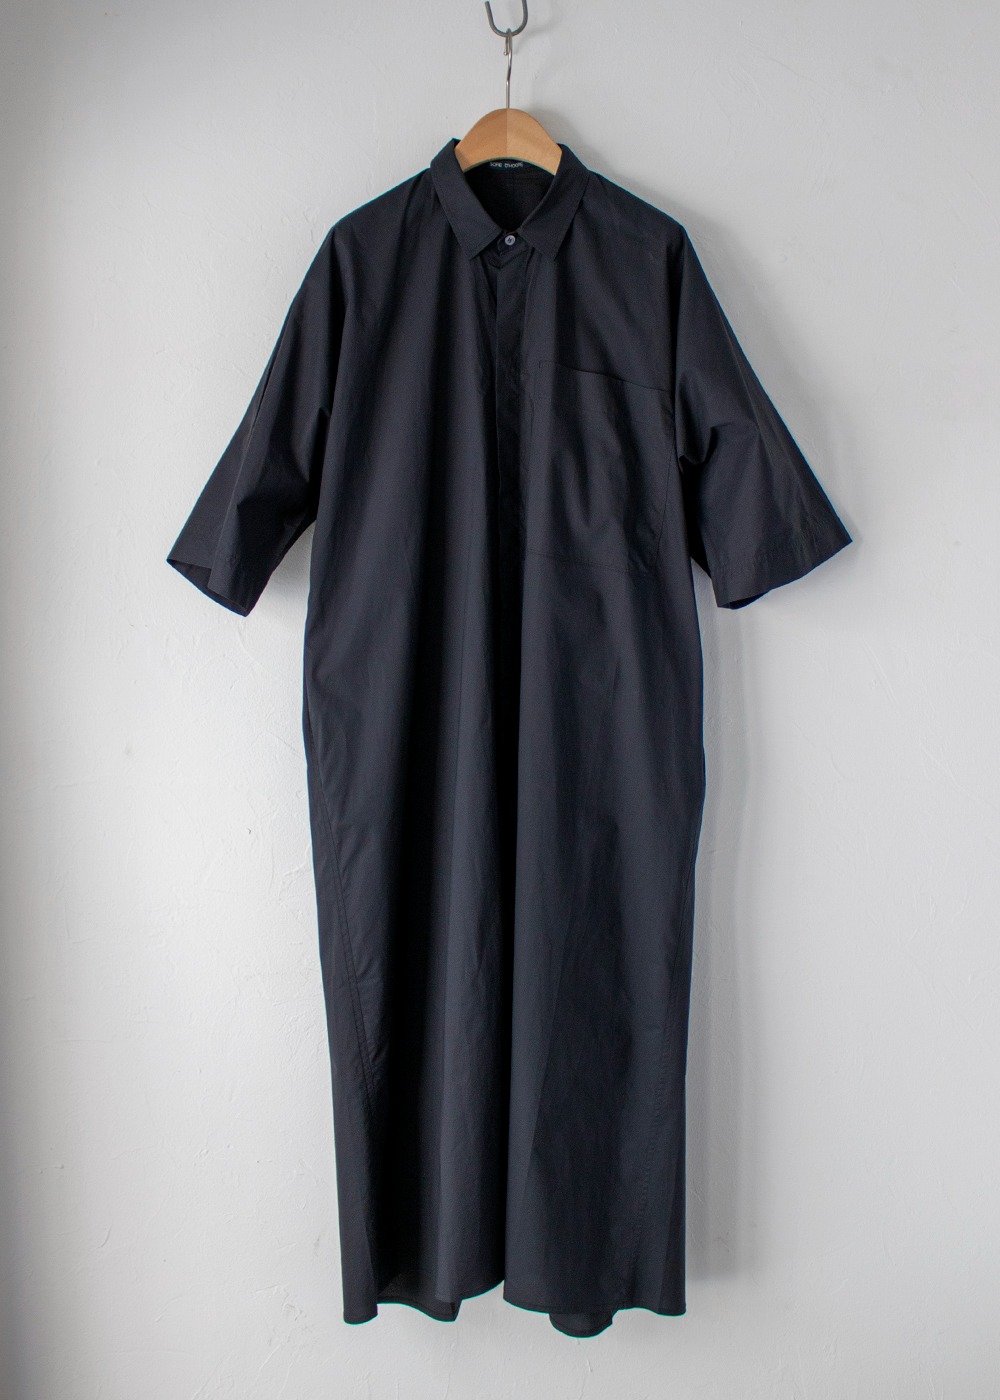 DORIS - Dress-Shirt Short Slv 3 pockets  - Woven Black